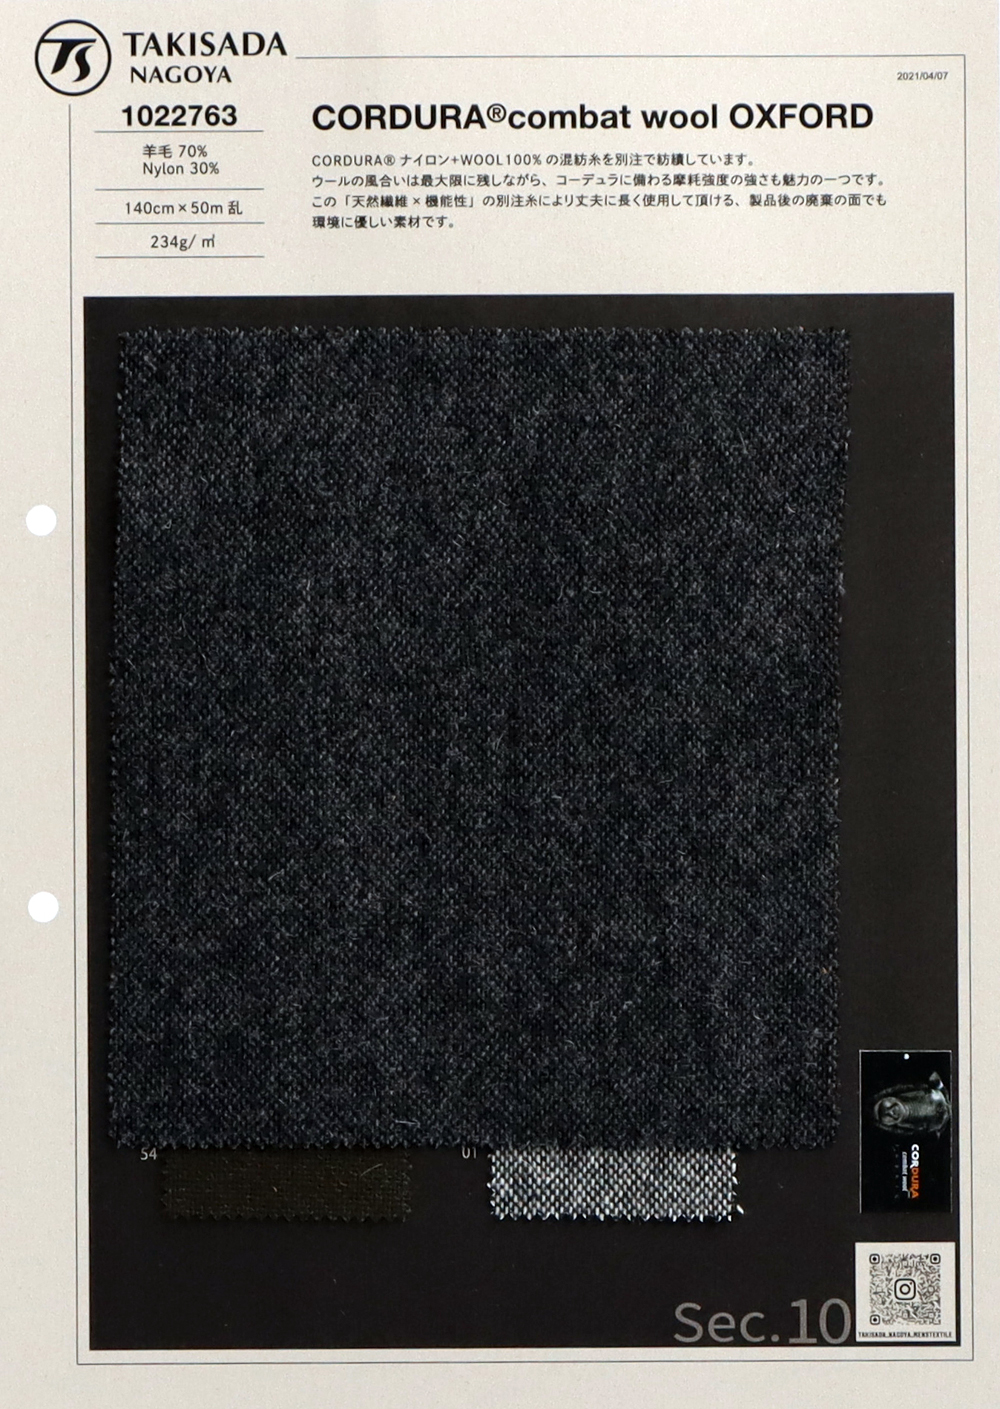 1022763 CORDURA Combat Wool Oxford[Textilgewebe] Takisada Nagoya